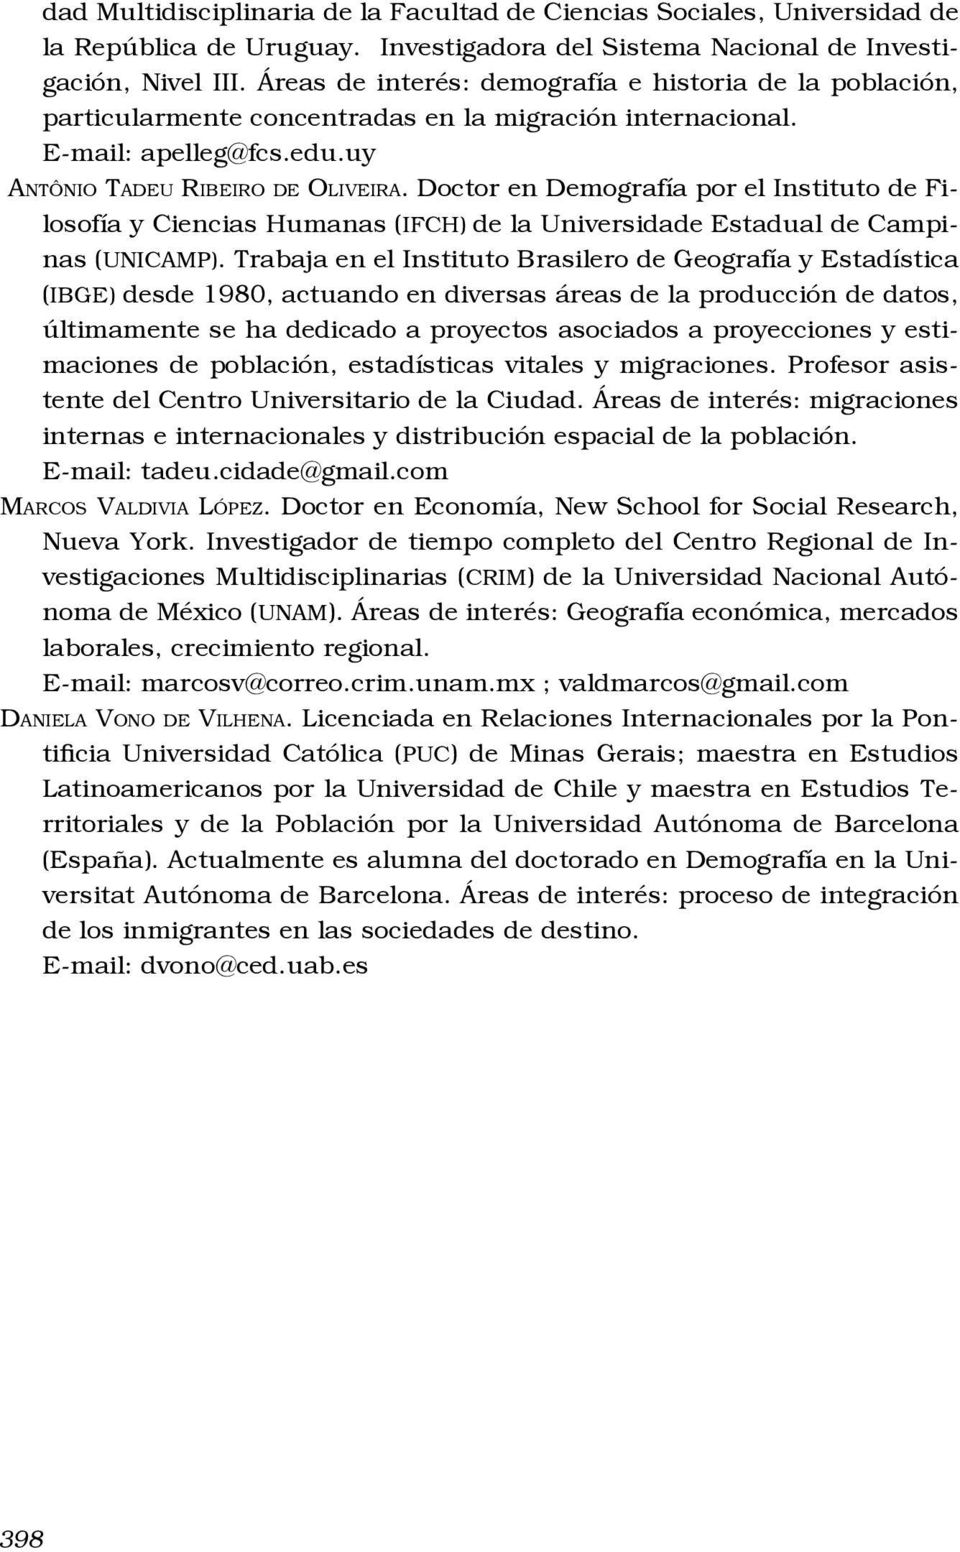 Doctor en Demografía por el Instituto de Filosofía y Ciencias Humanas (IFCH) de la Universidade Estadual de Campinas (UNICAMP).